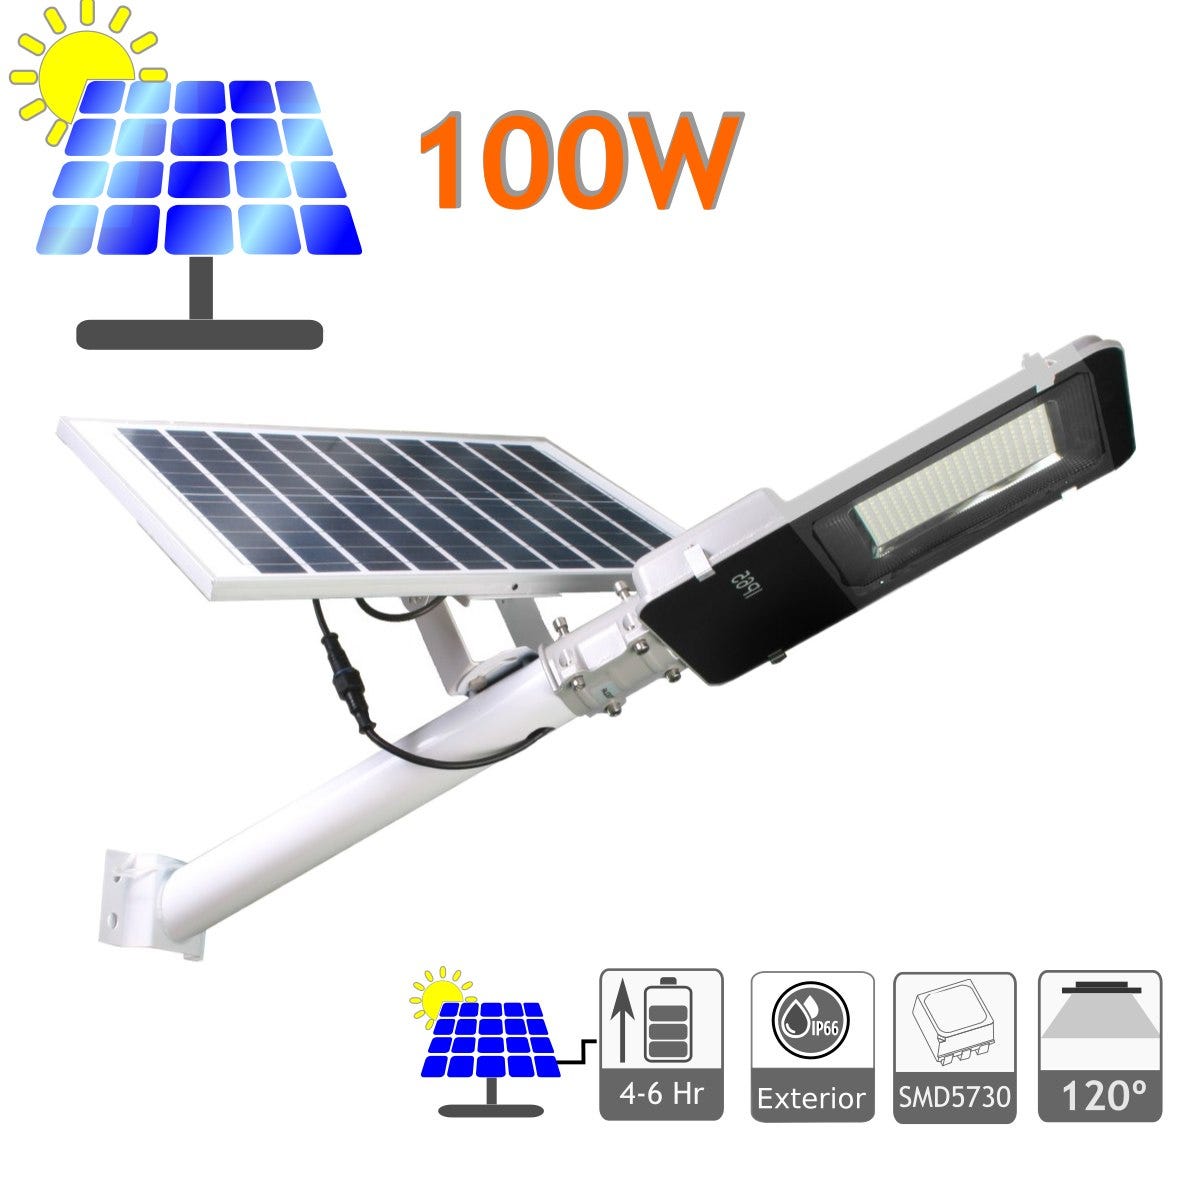 Foco LED solar 200W con sensor de movimiento IP66 en 4500K y 6000K